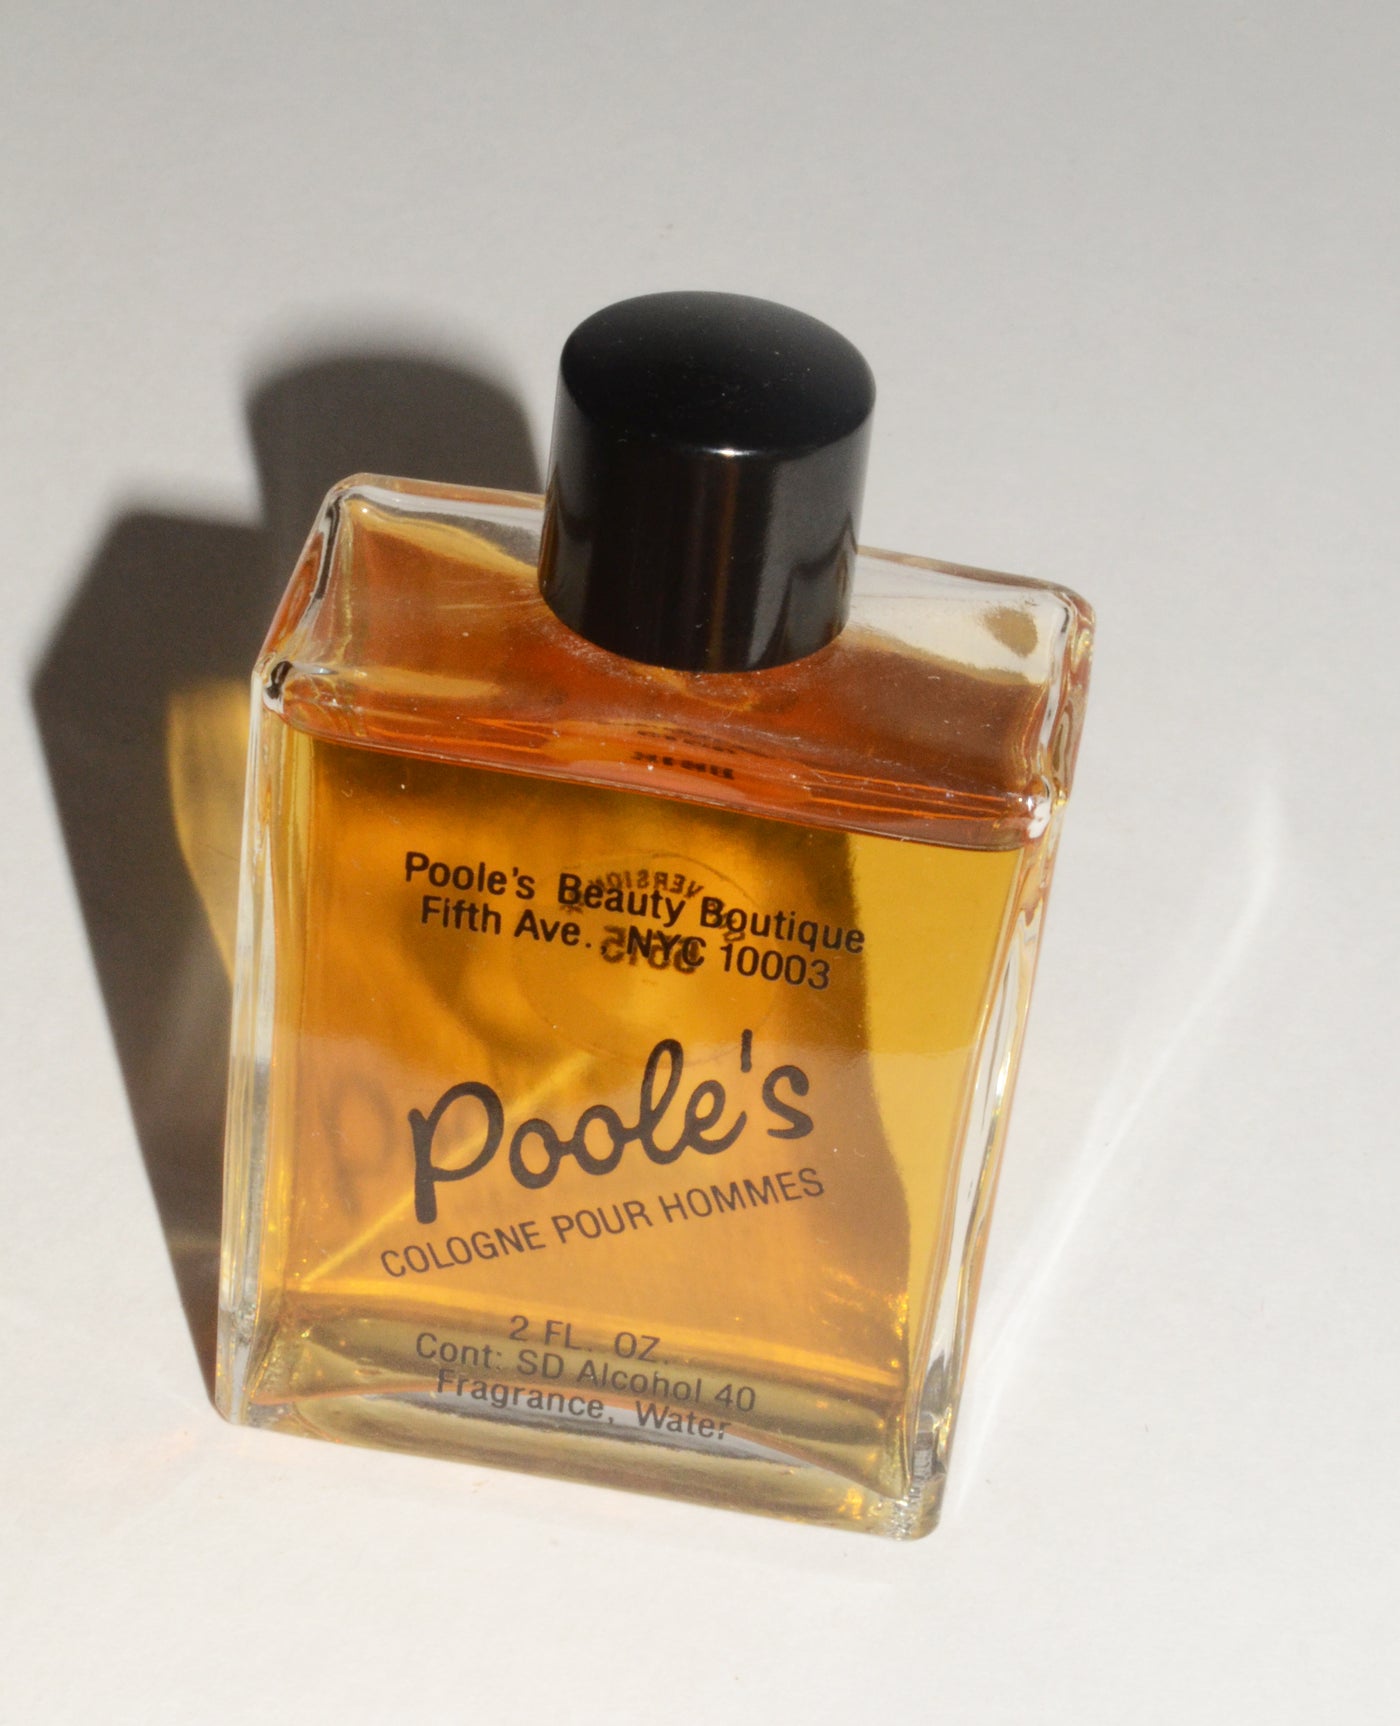 Vintage Poole’s Cologne Pour Hommes